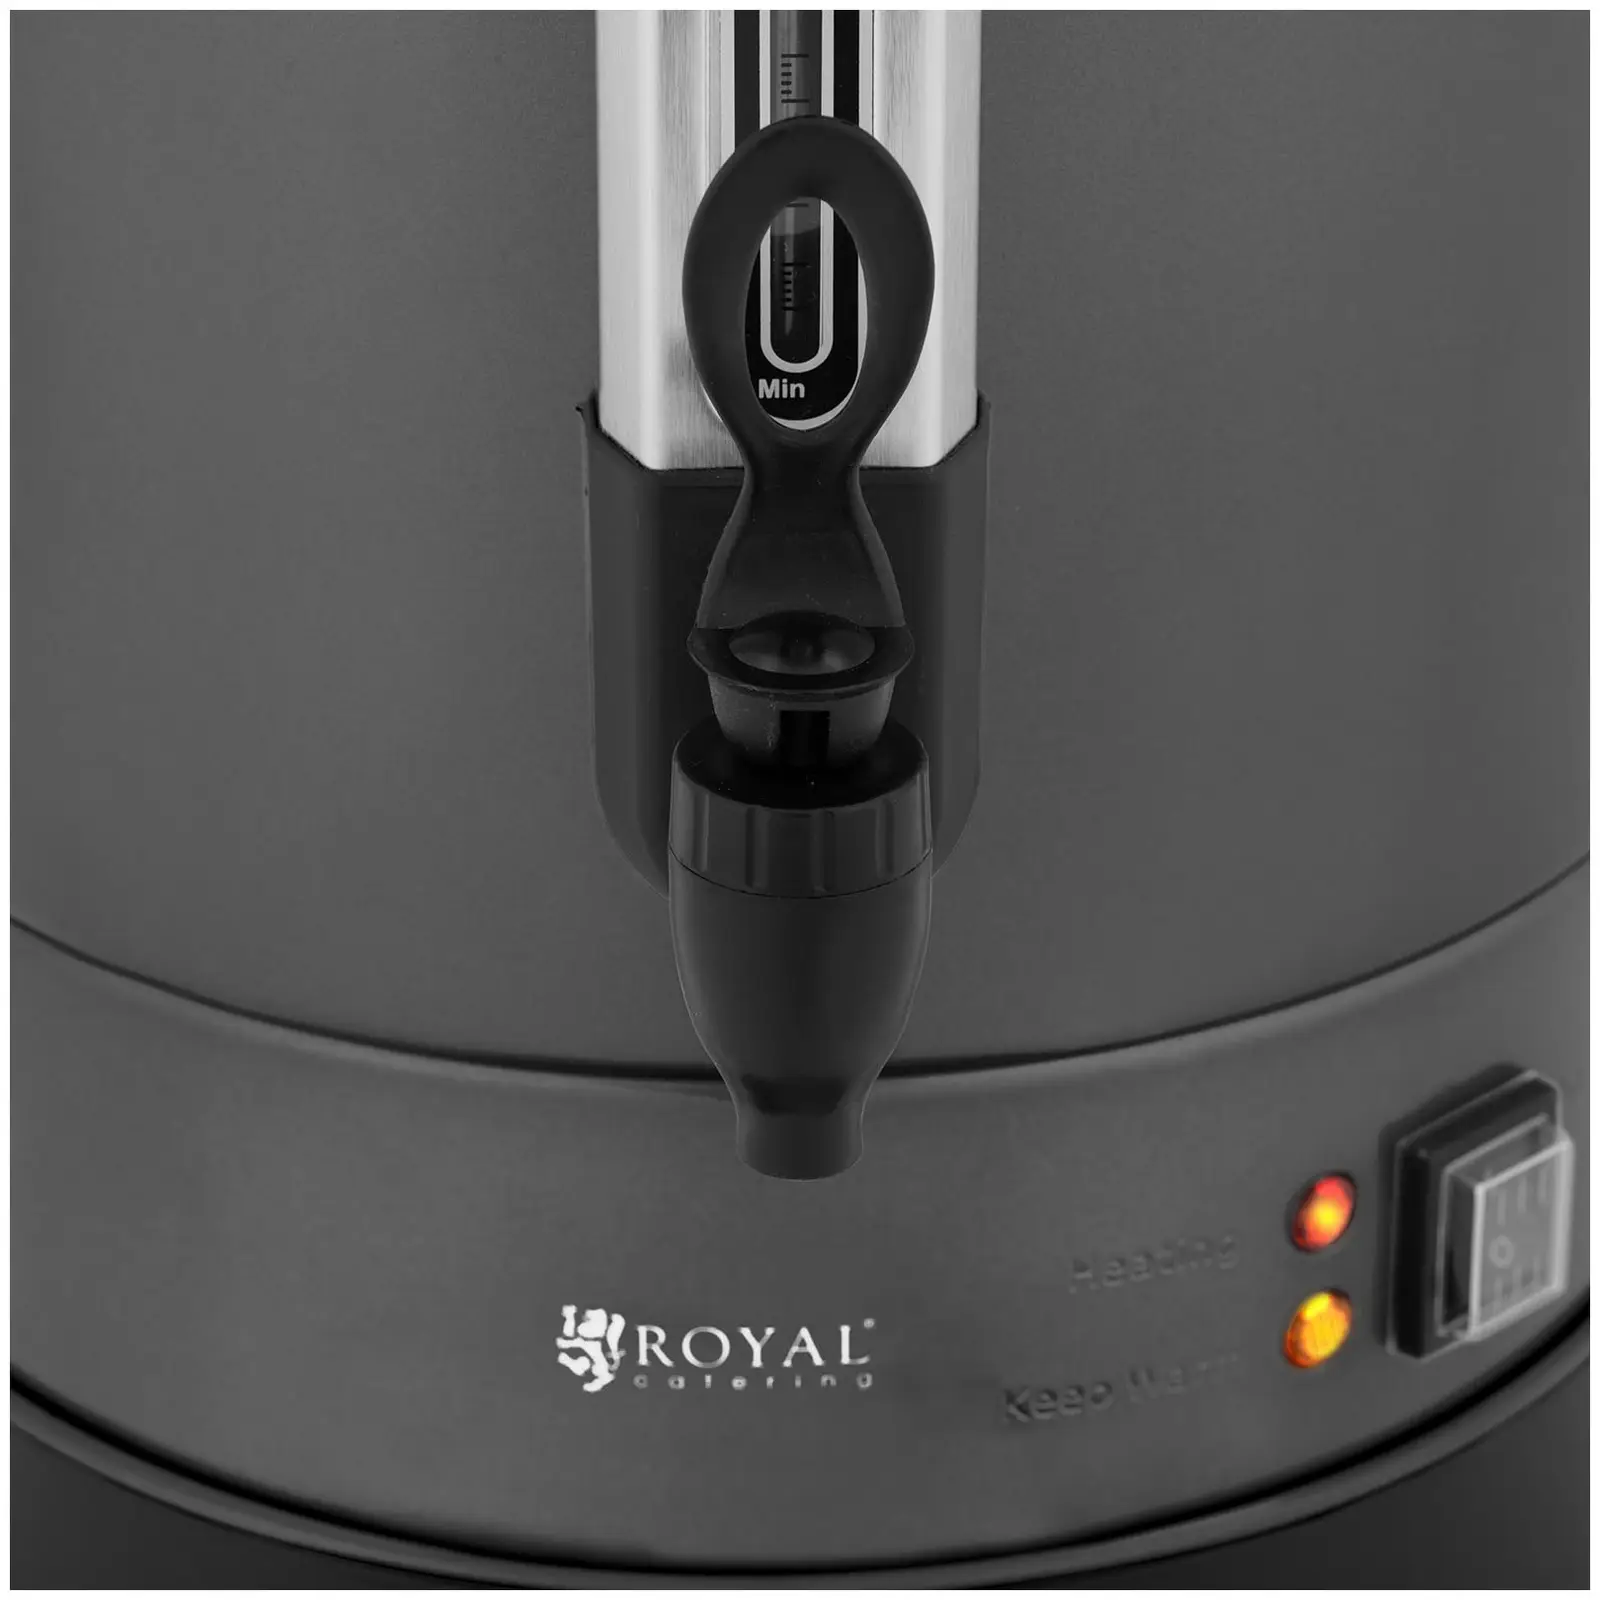 Kaffemaskine - 14 l - Royal Catering